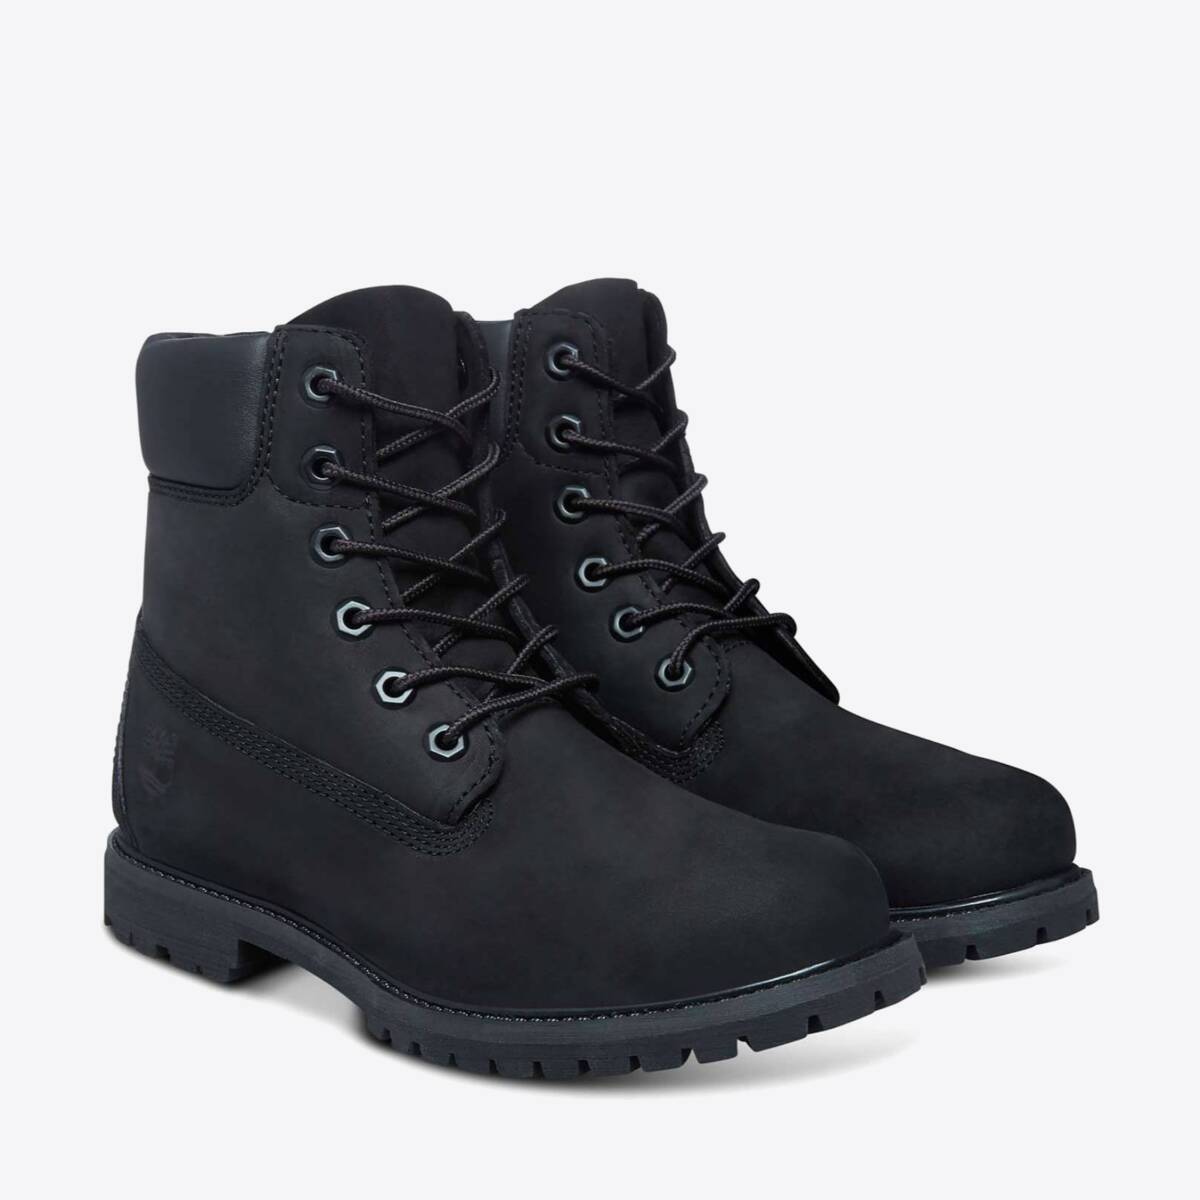  Women's 6-Inch Premium Waterproof Boots Black